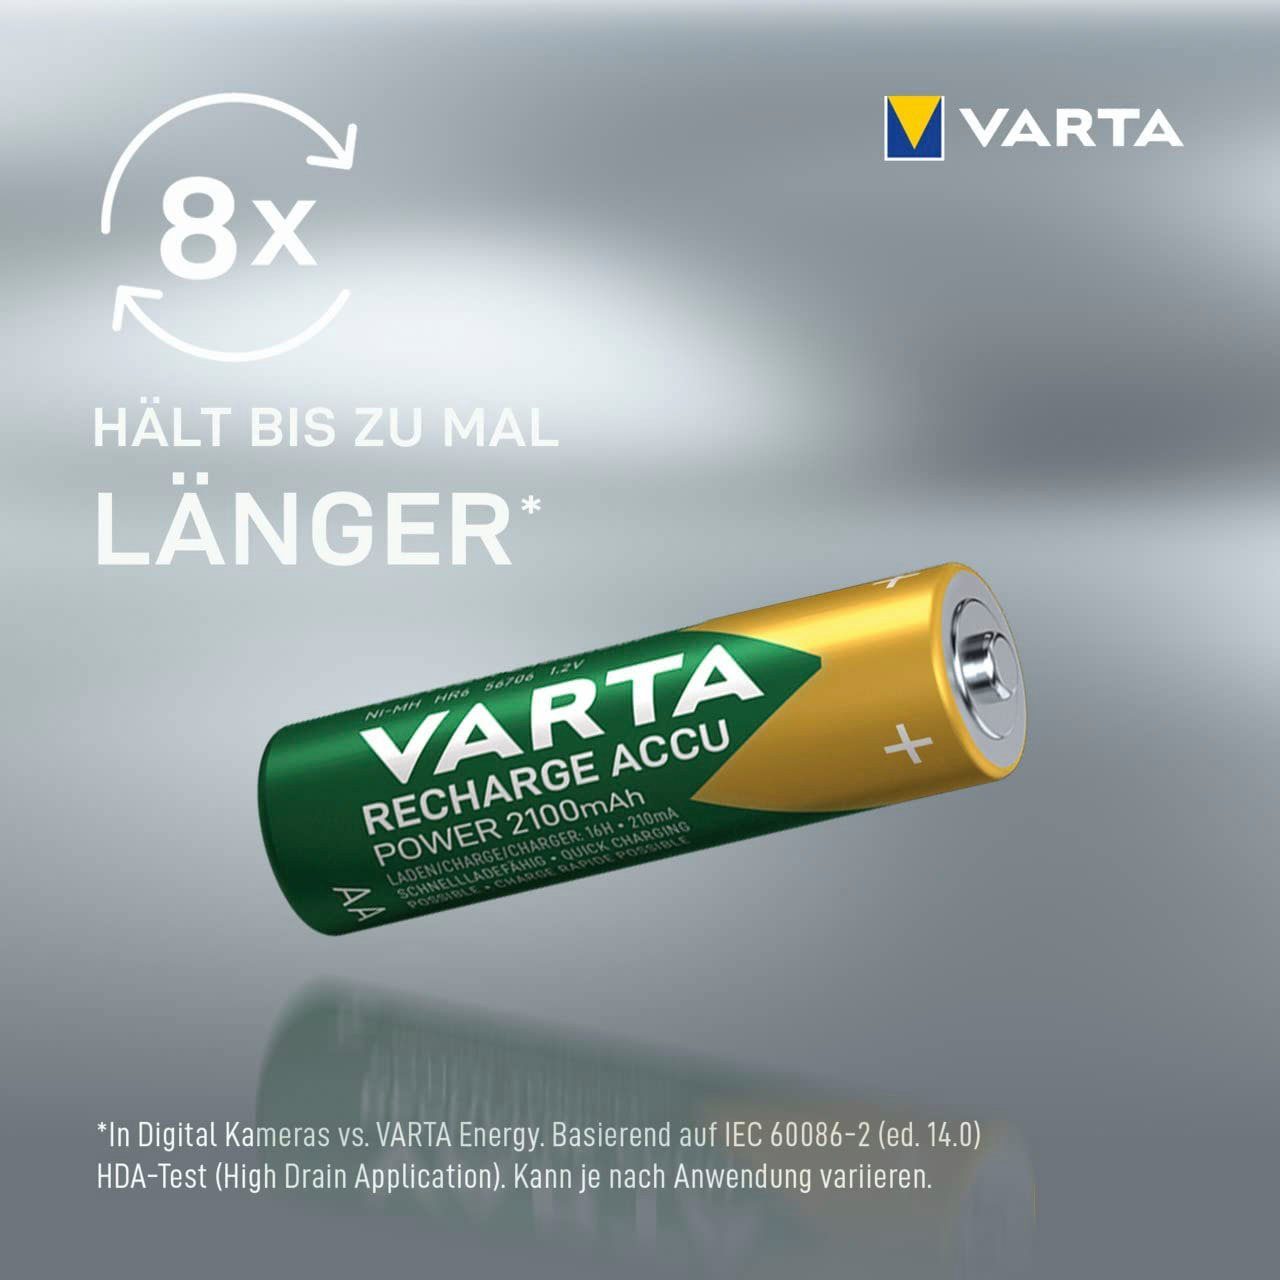 VARTA Recharge Accu Recycled 2100 AA (6 Akkupacks Mignon 2100 mAh mAh St) AA